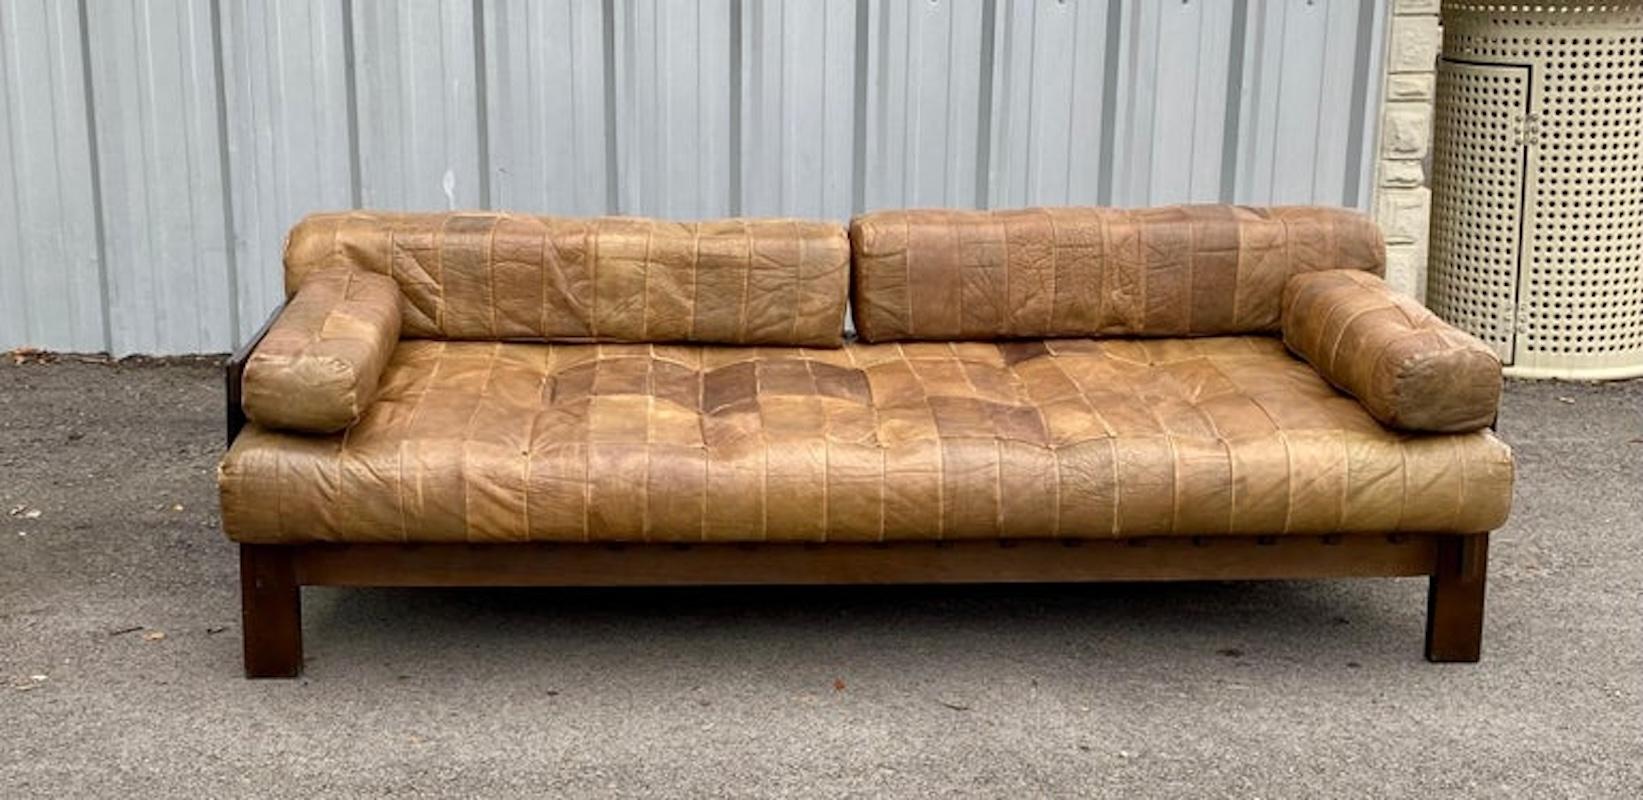 Le canapé de jour patchwork en cuir vintage présente un cuir de qualité dans des teintes variées de bruns chauds avec des coussins d'assise, d'accoudoir et de dossier amovibles. Ce canapé-lit de jour a une assise profonde, une belle patine et des